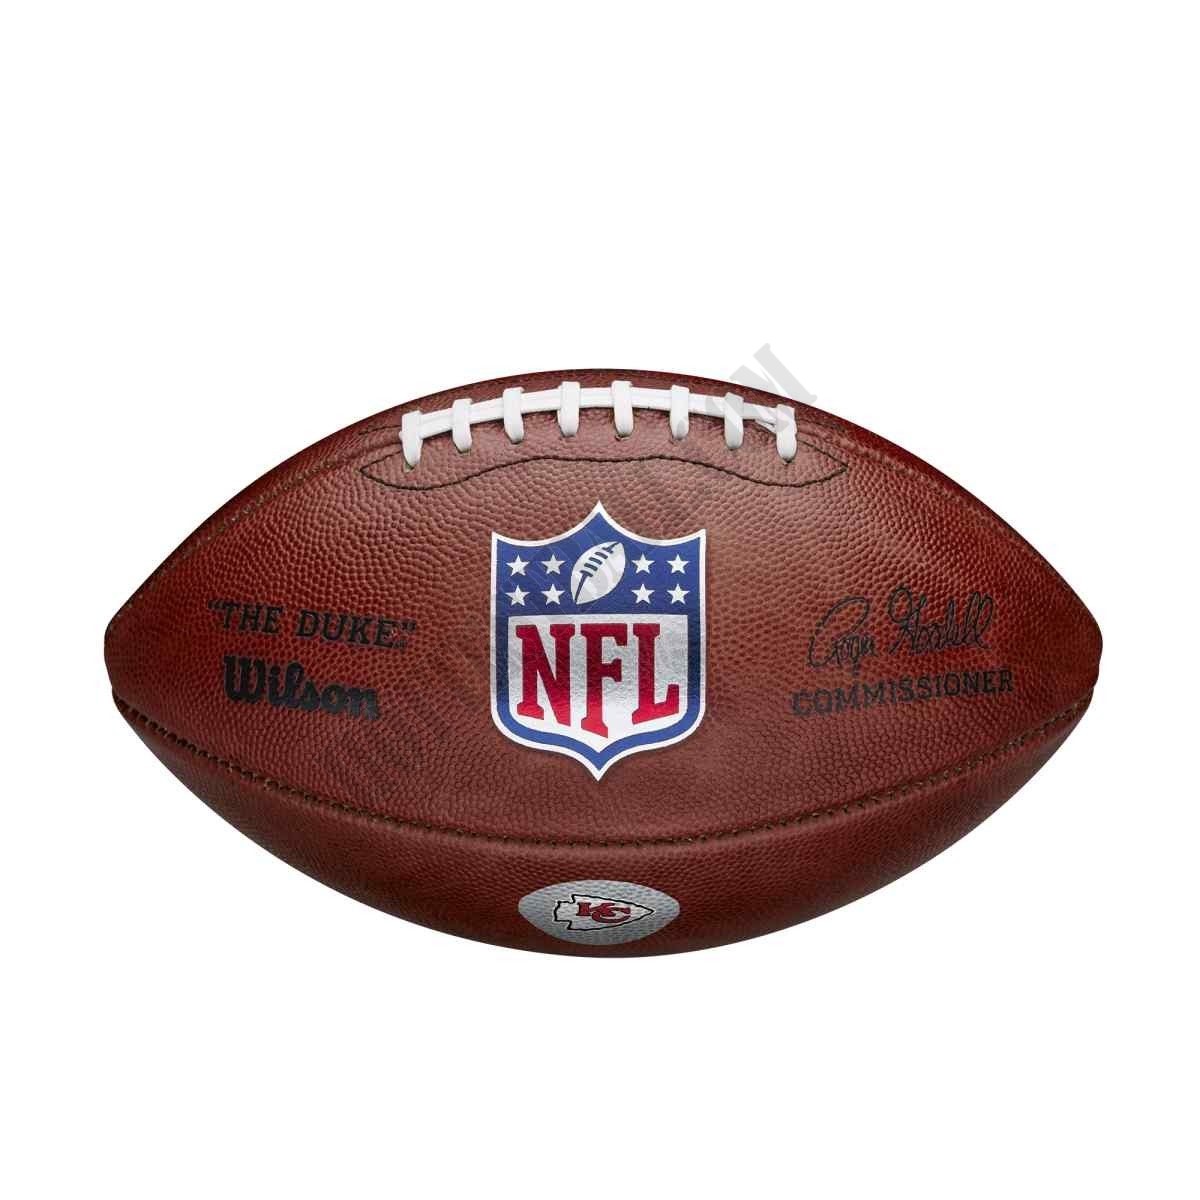 The Duke Decal NFL Football - Kansas City Chiefs - Wilson Discount Store - -1